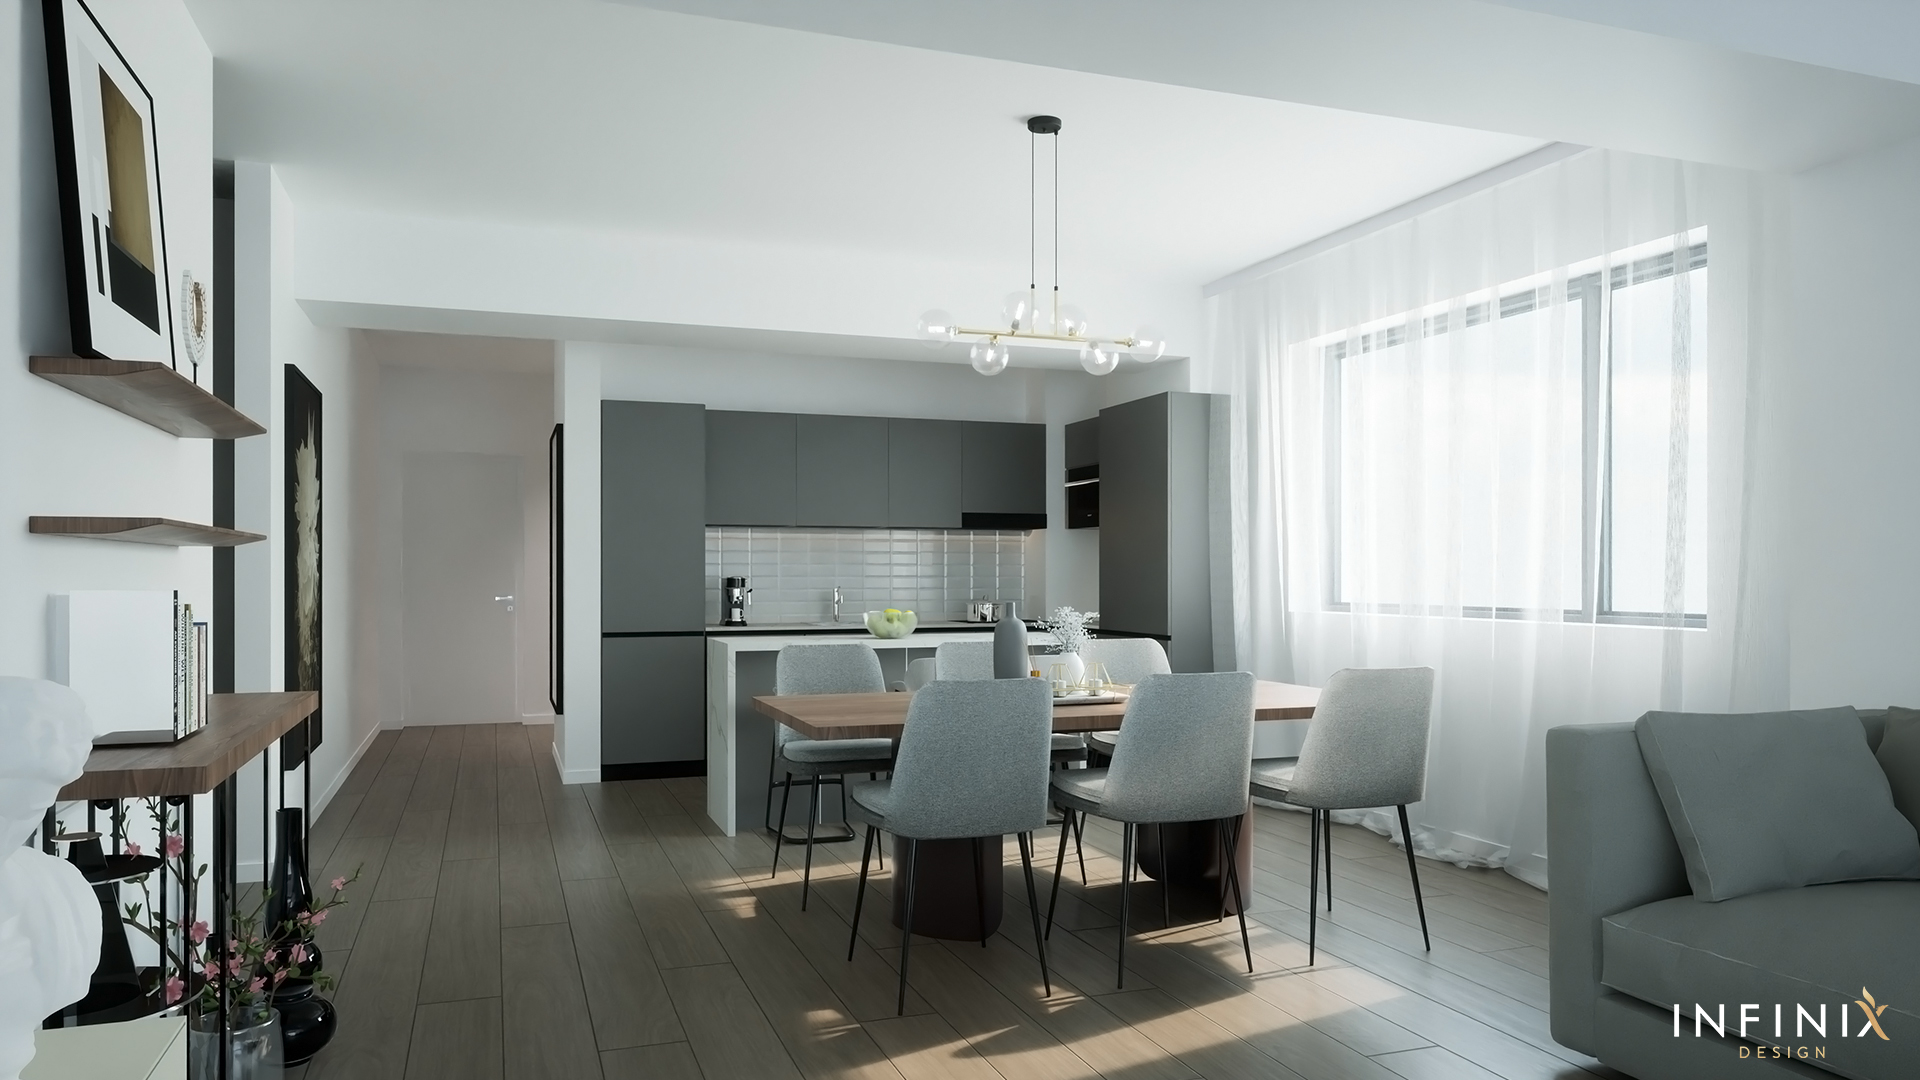 012.01_Infinix_design_interior_apartament